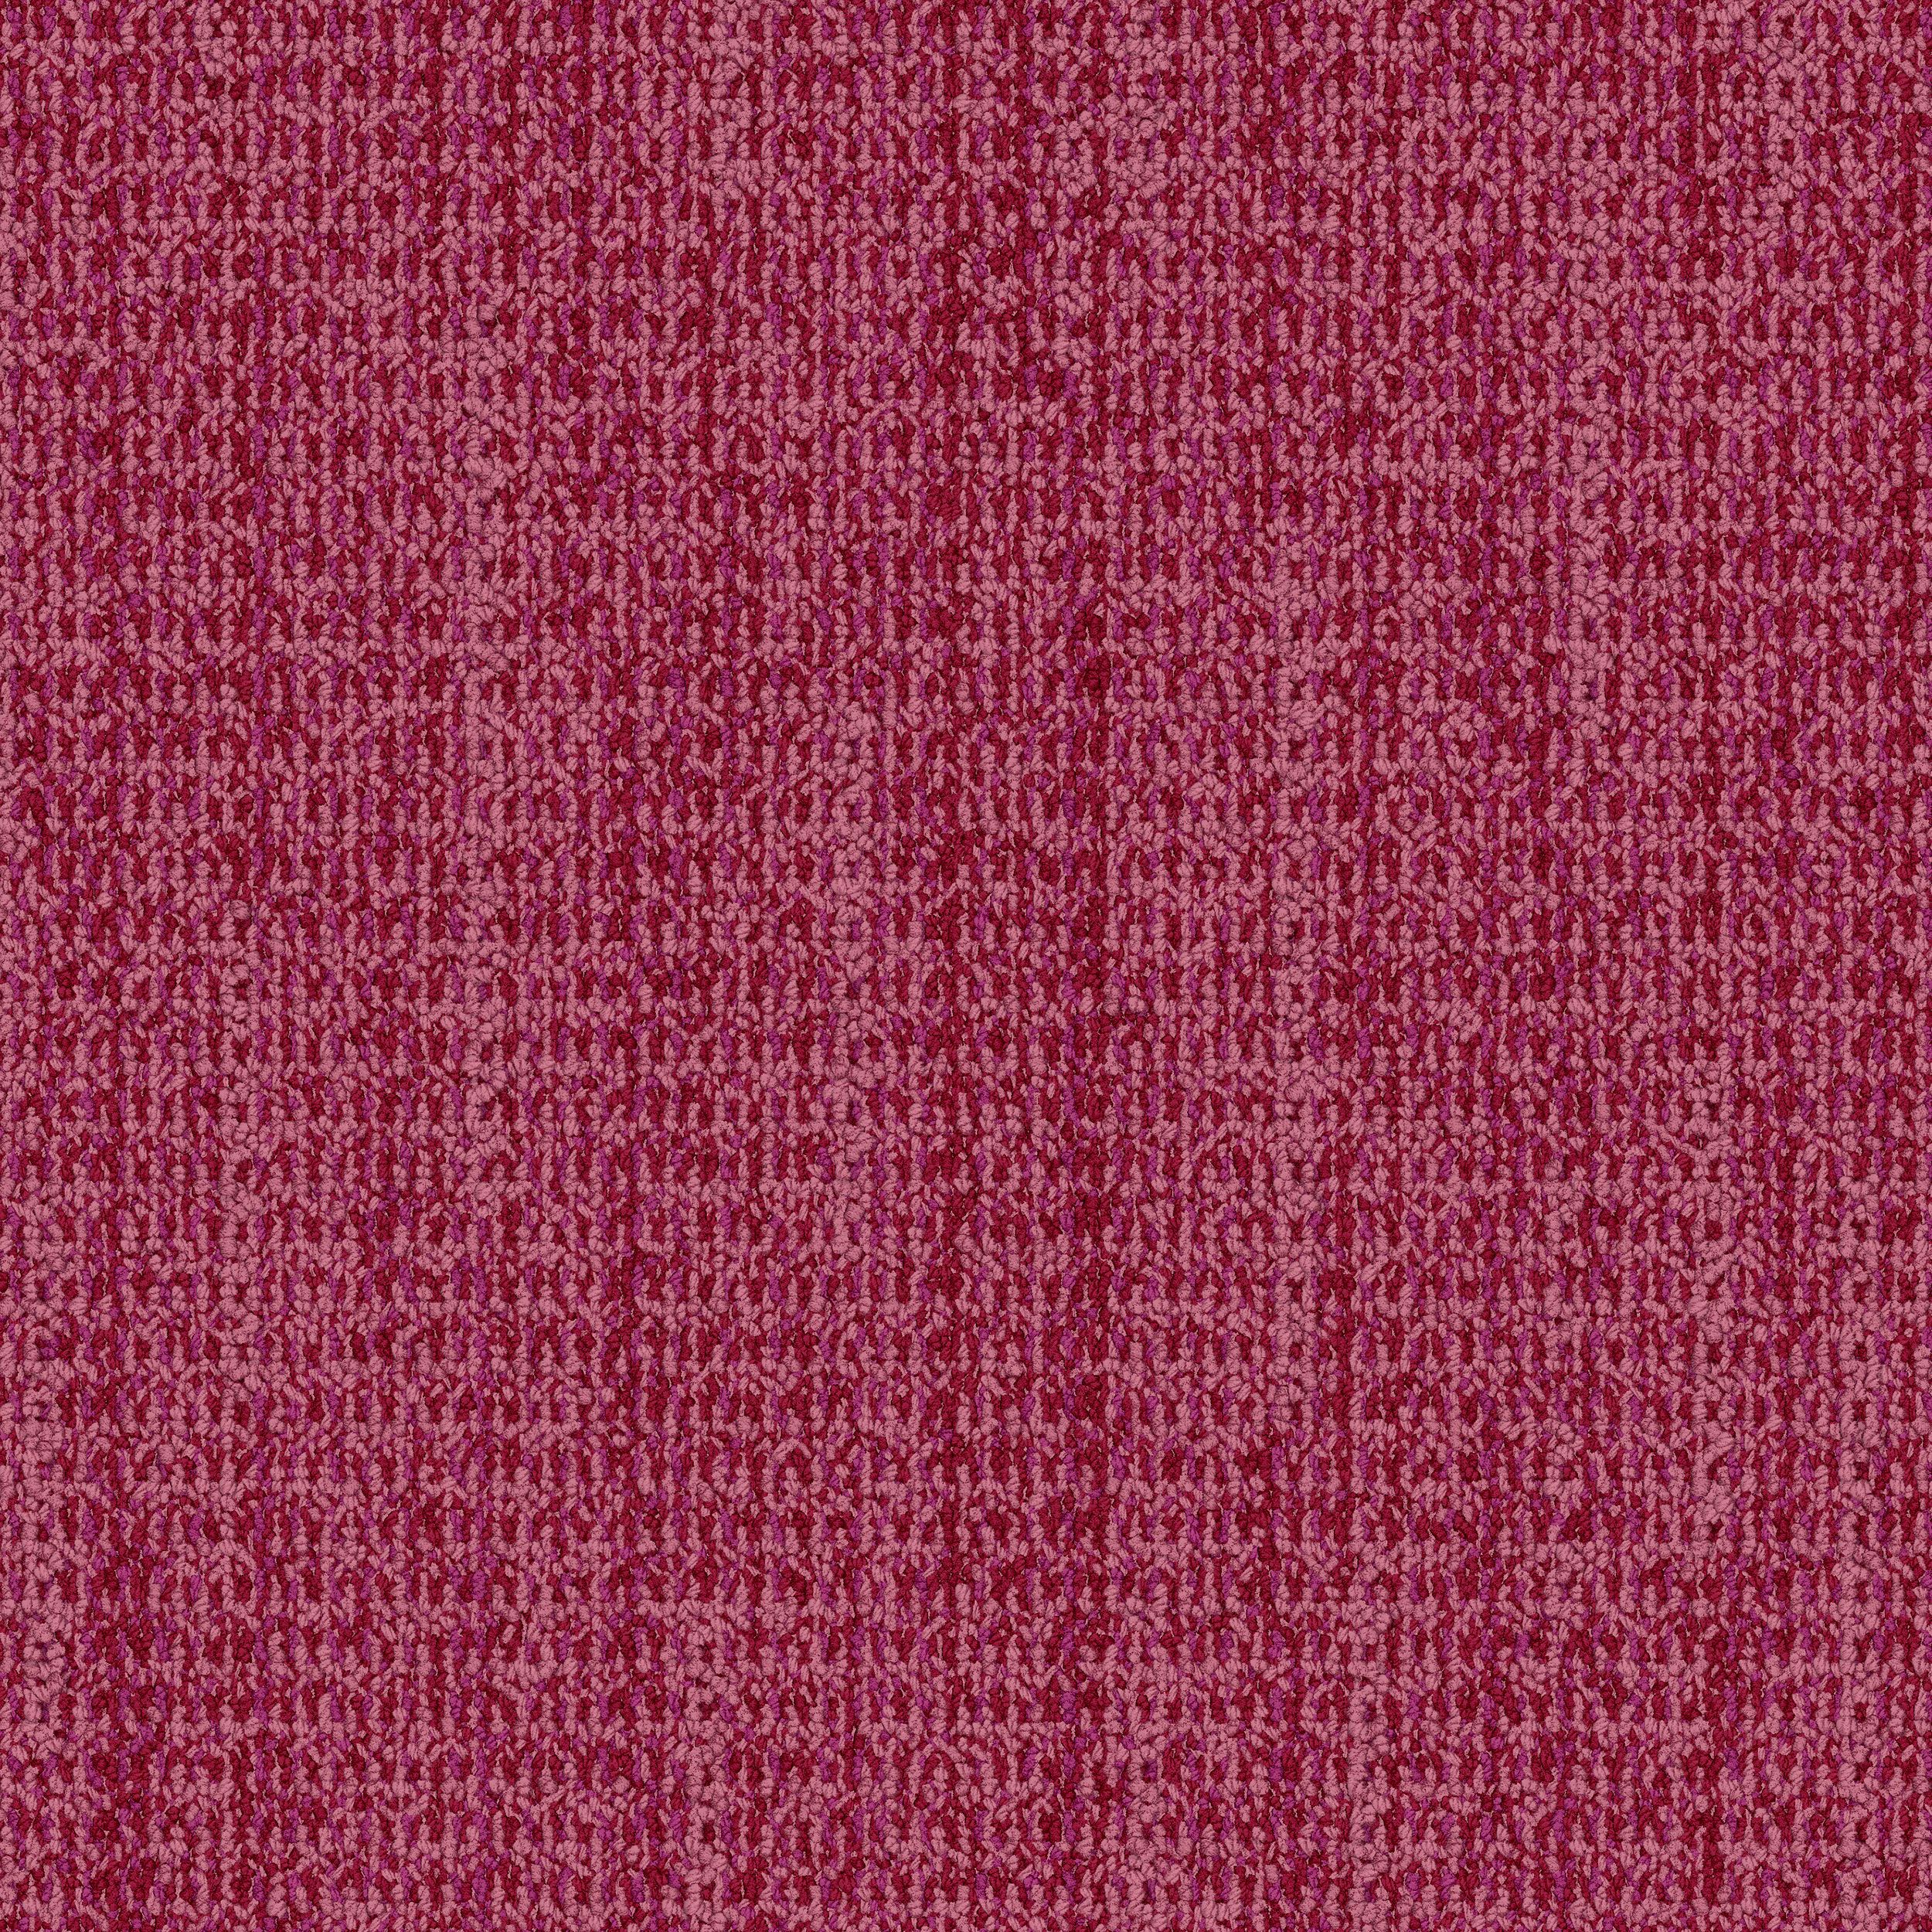 WG100 Carpet Tile In Rose afbeeldingnummer 1